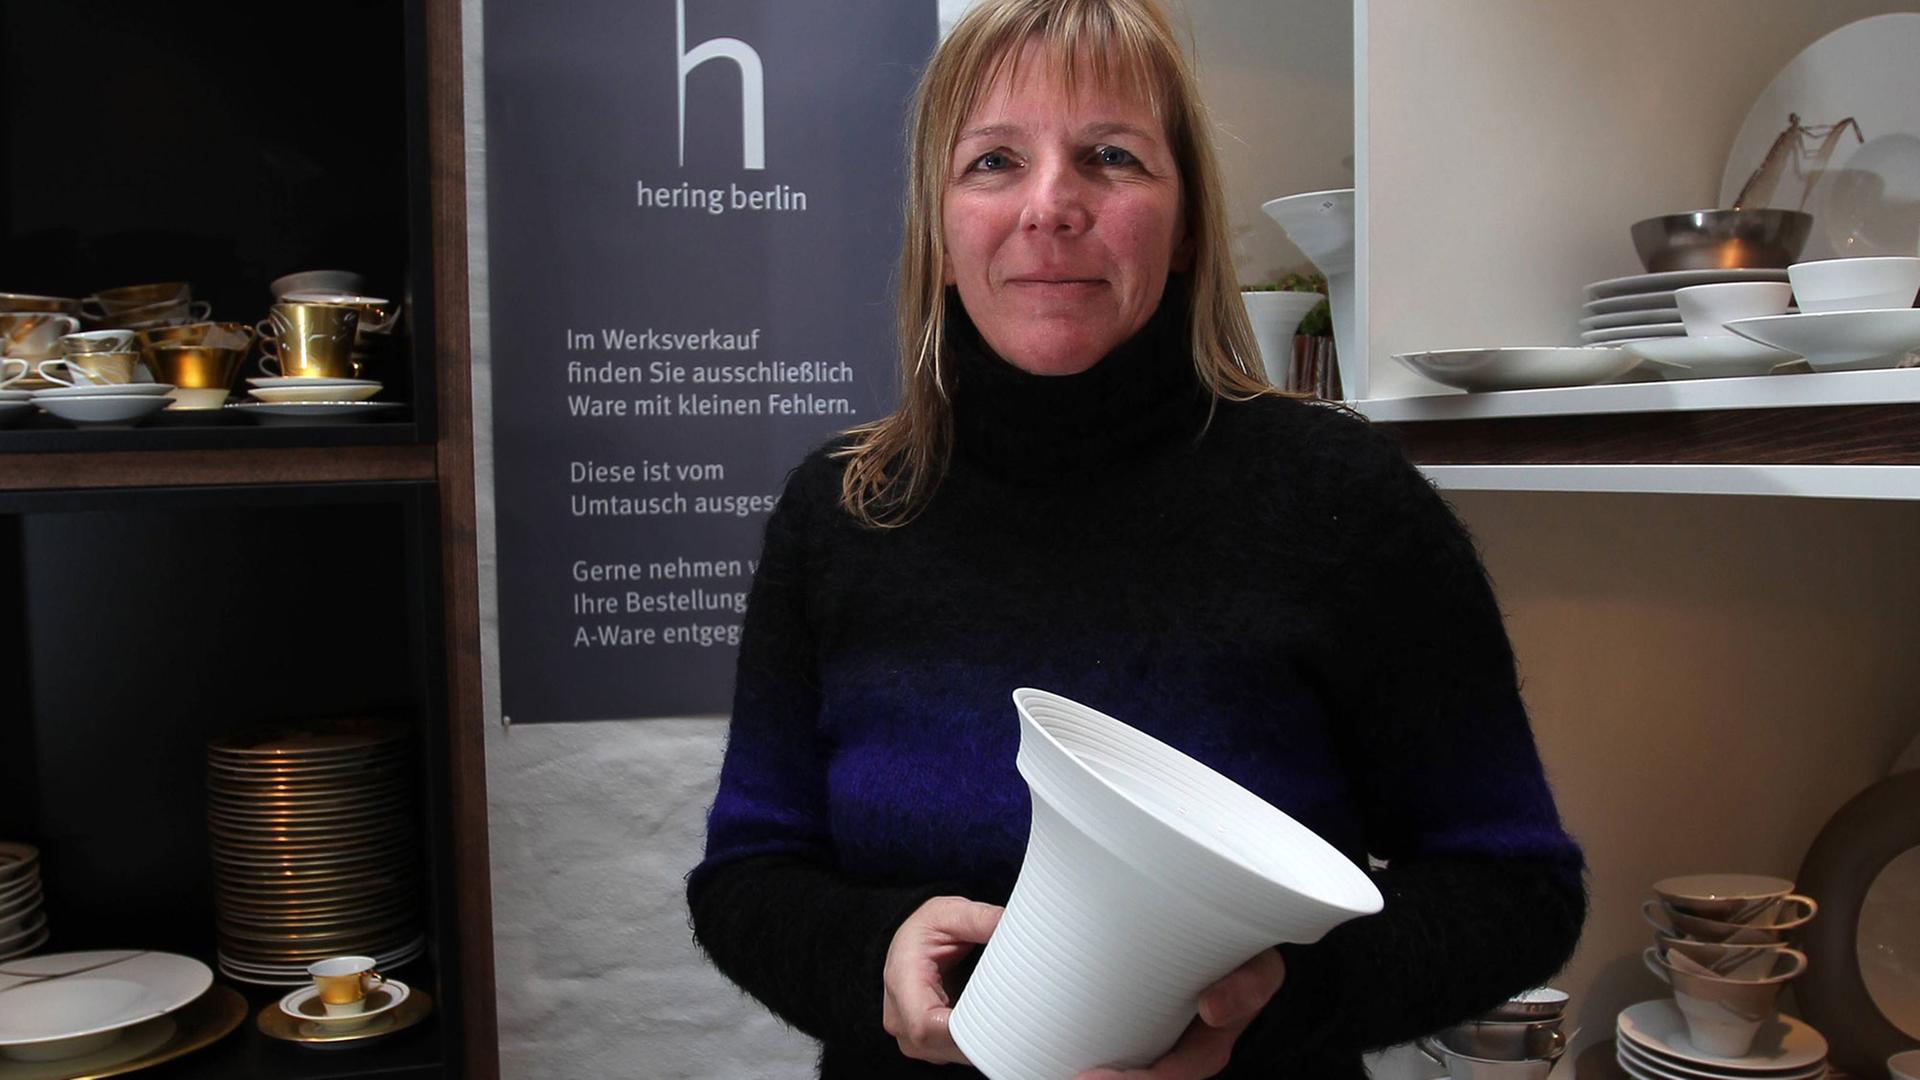 Die Töpferin, Porzellandesignerin und Tischdekorkünstlerin Stefanie Hering steht im Werksverkaufs ihres Geschirrs, hält eine Vase in der Hand. Um sie herum stehen in Regalen von ihr designte Stücke.